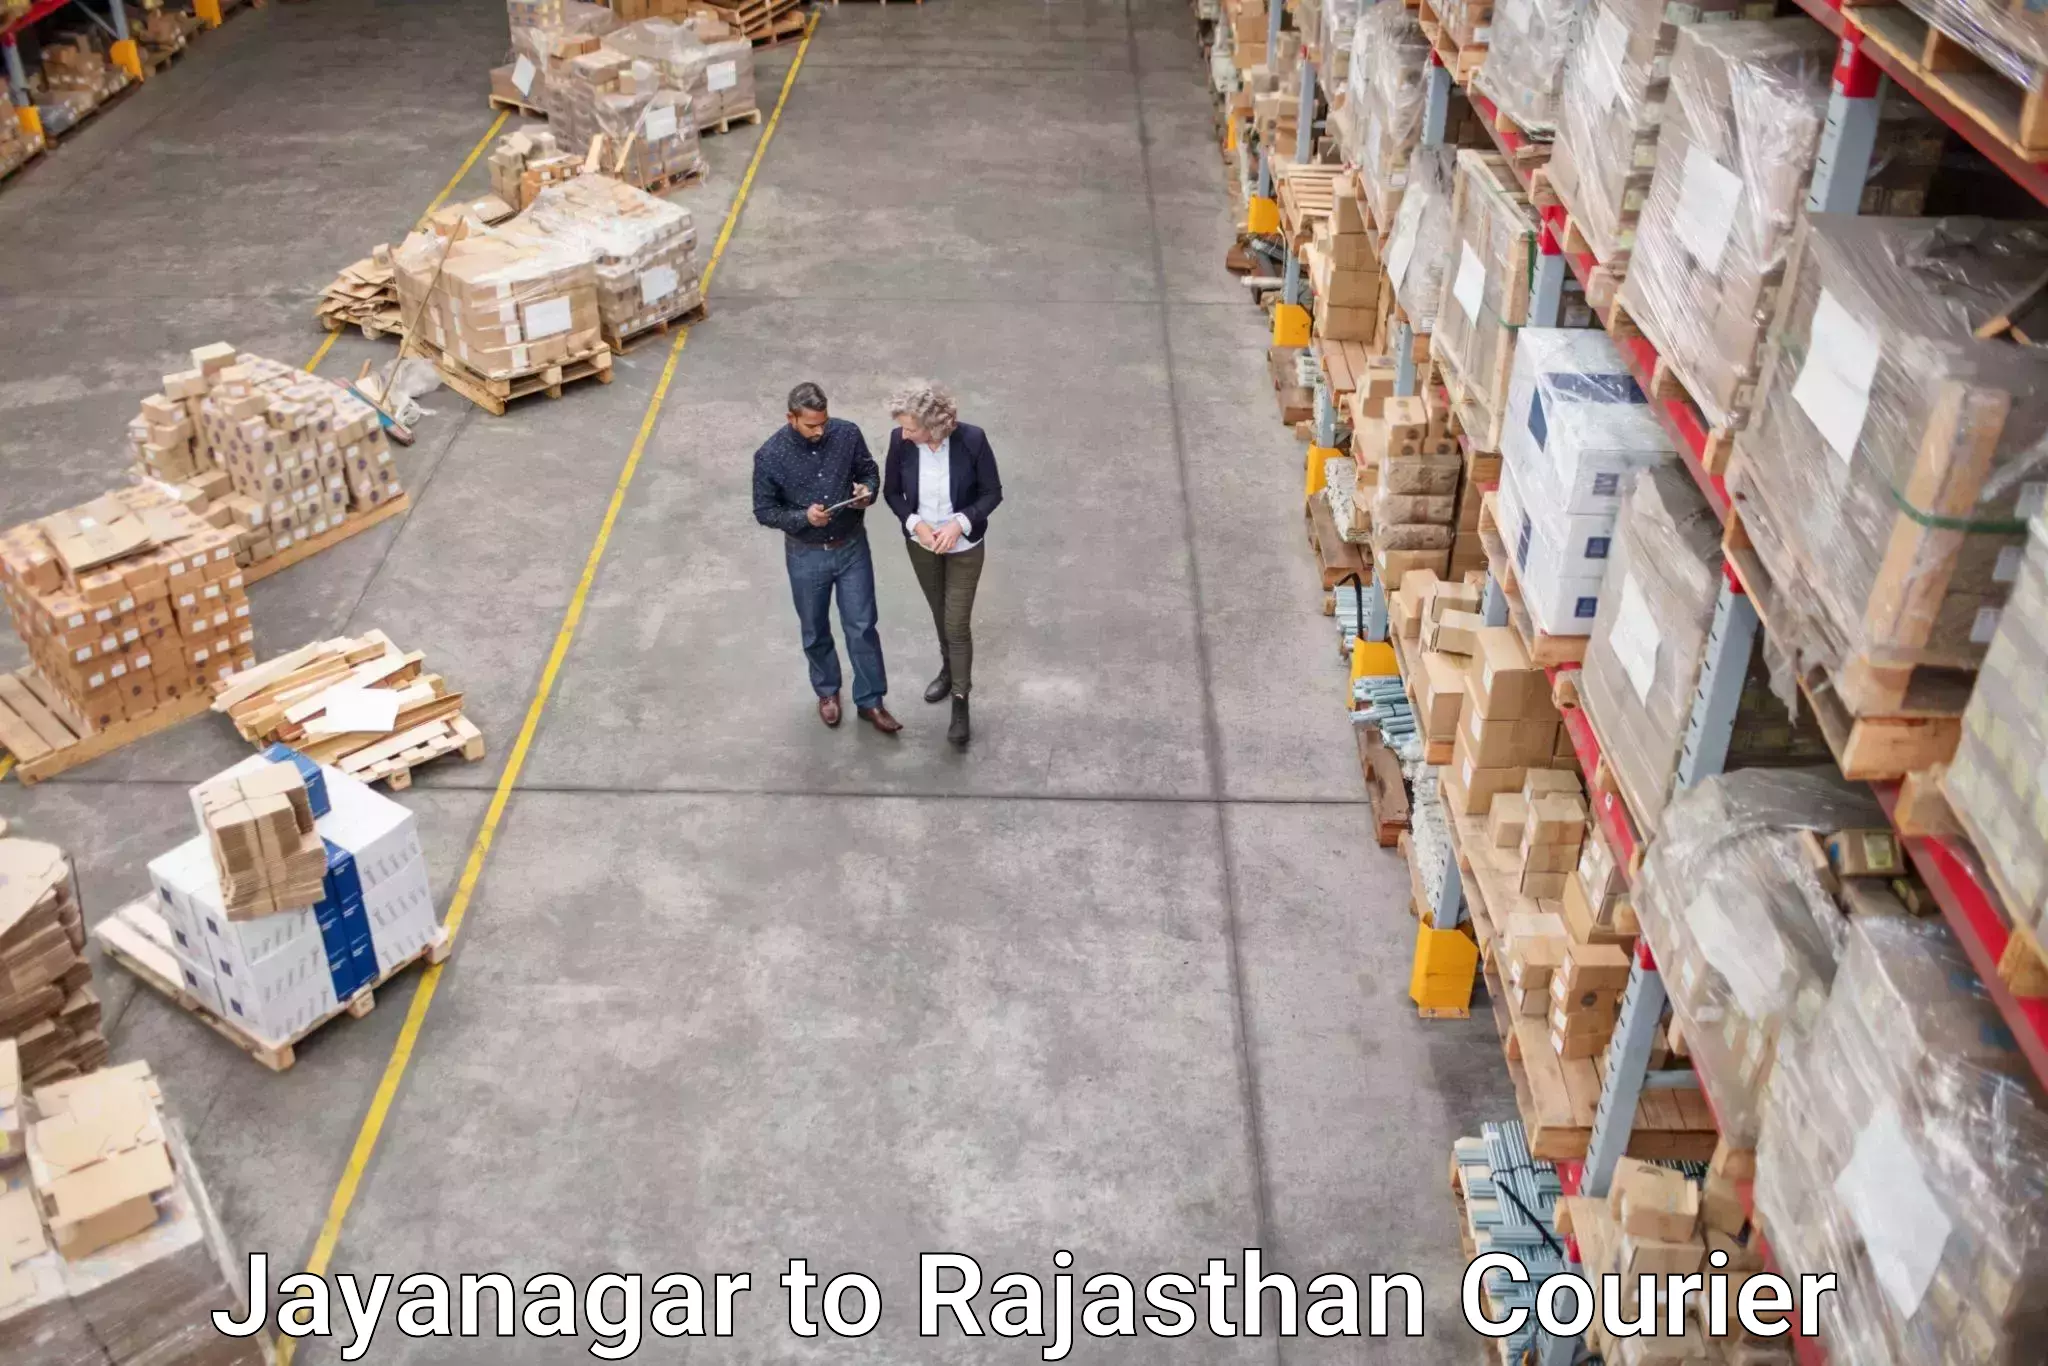 User-friendly delivery service Jayanagar to Chittorgarh